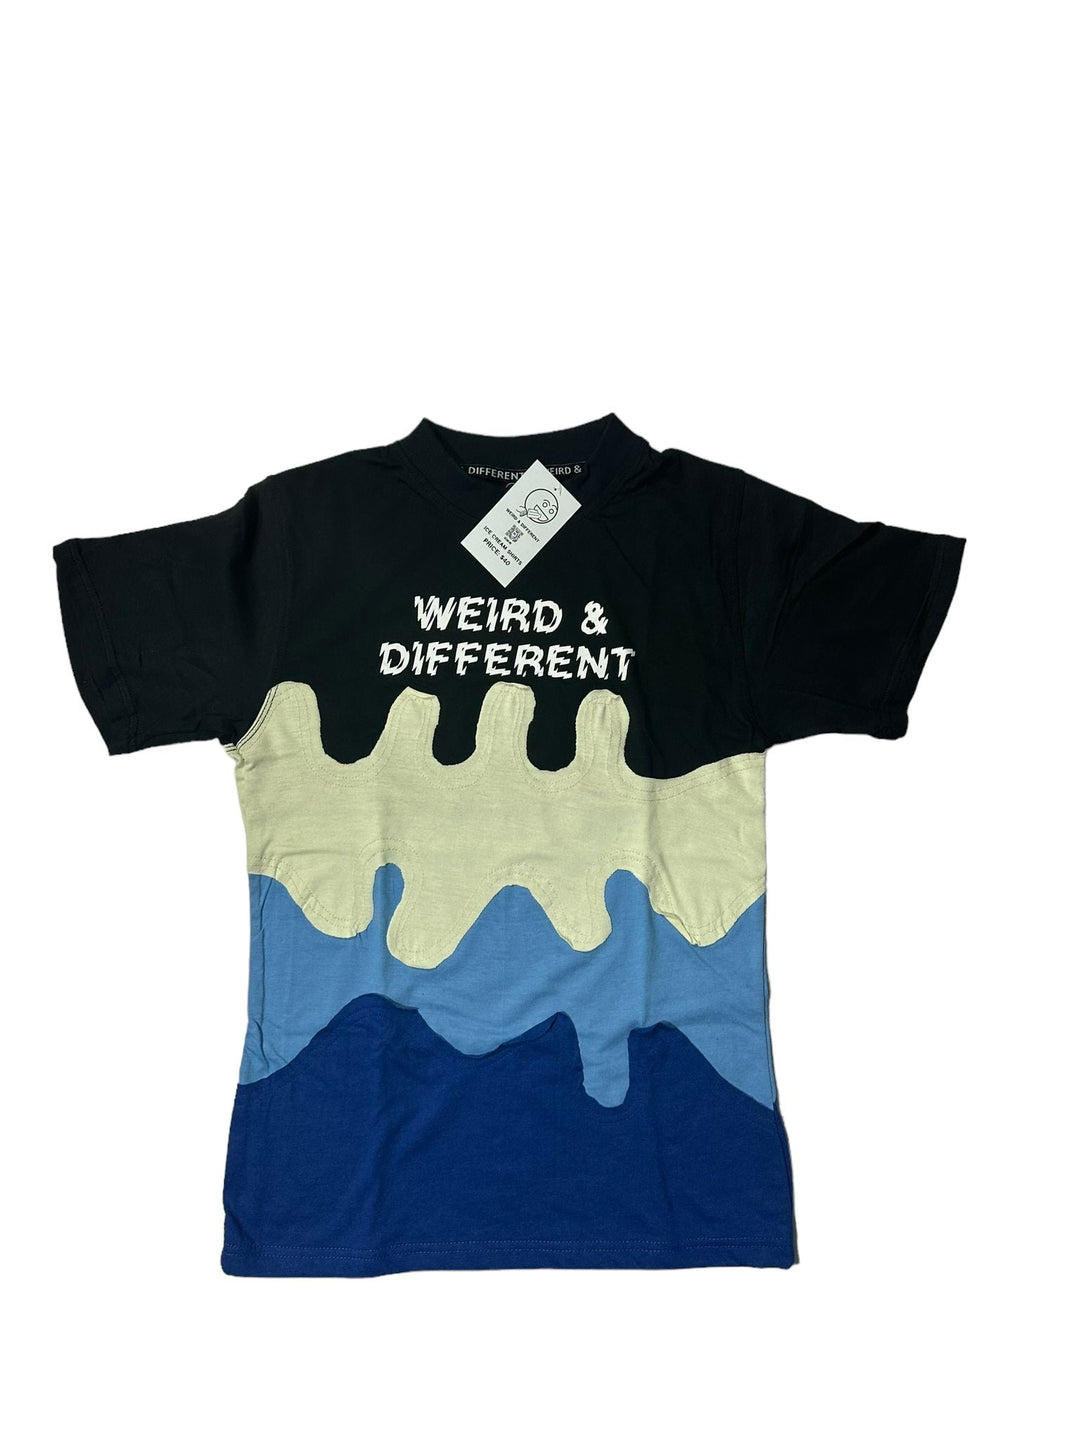 W&D Ice cream shirt - Weird & Different